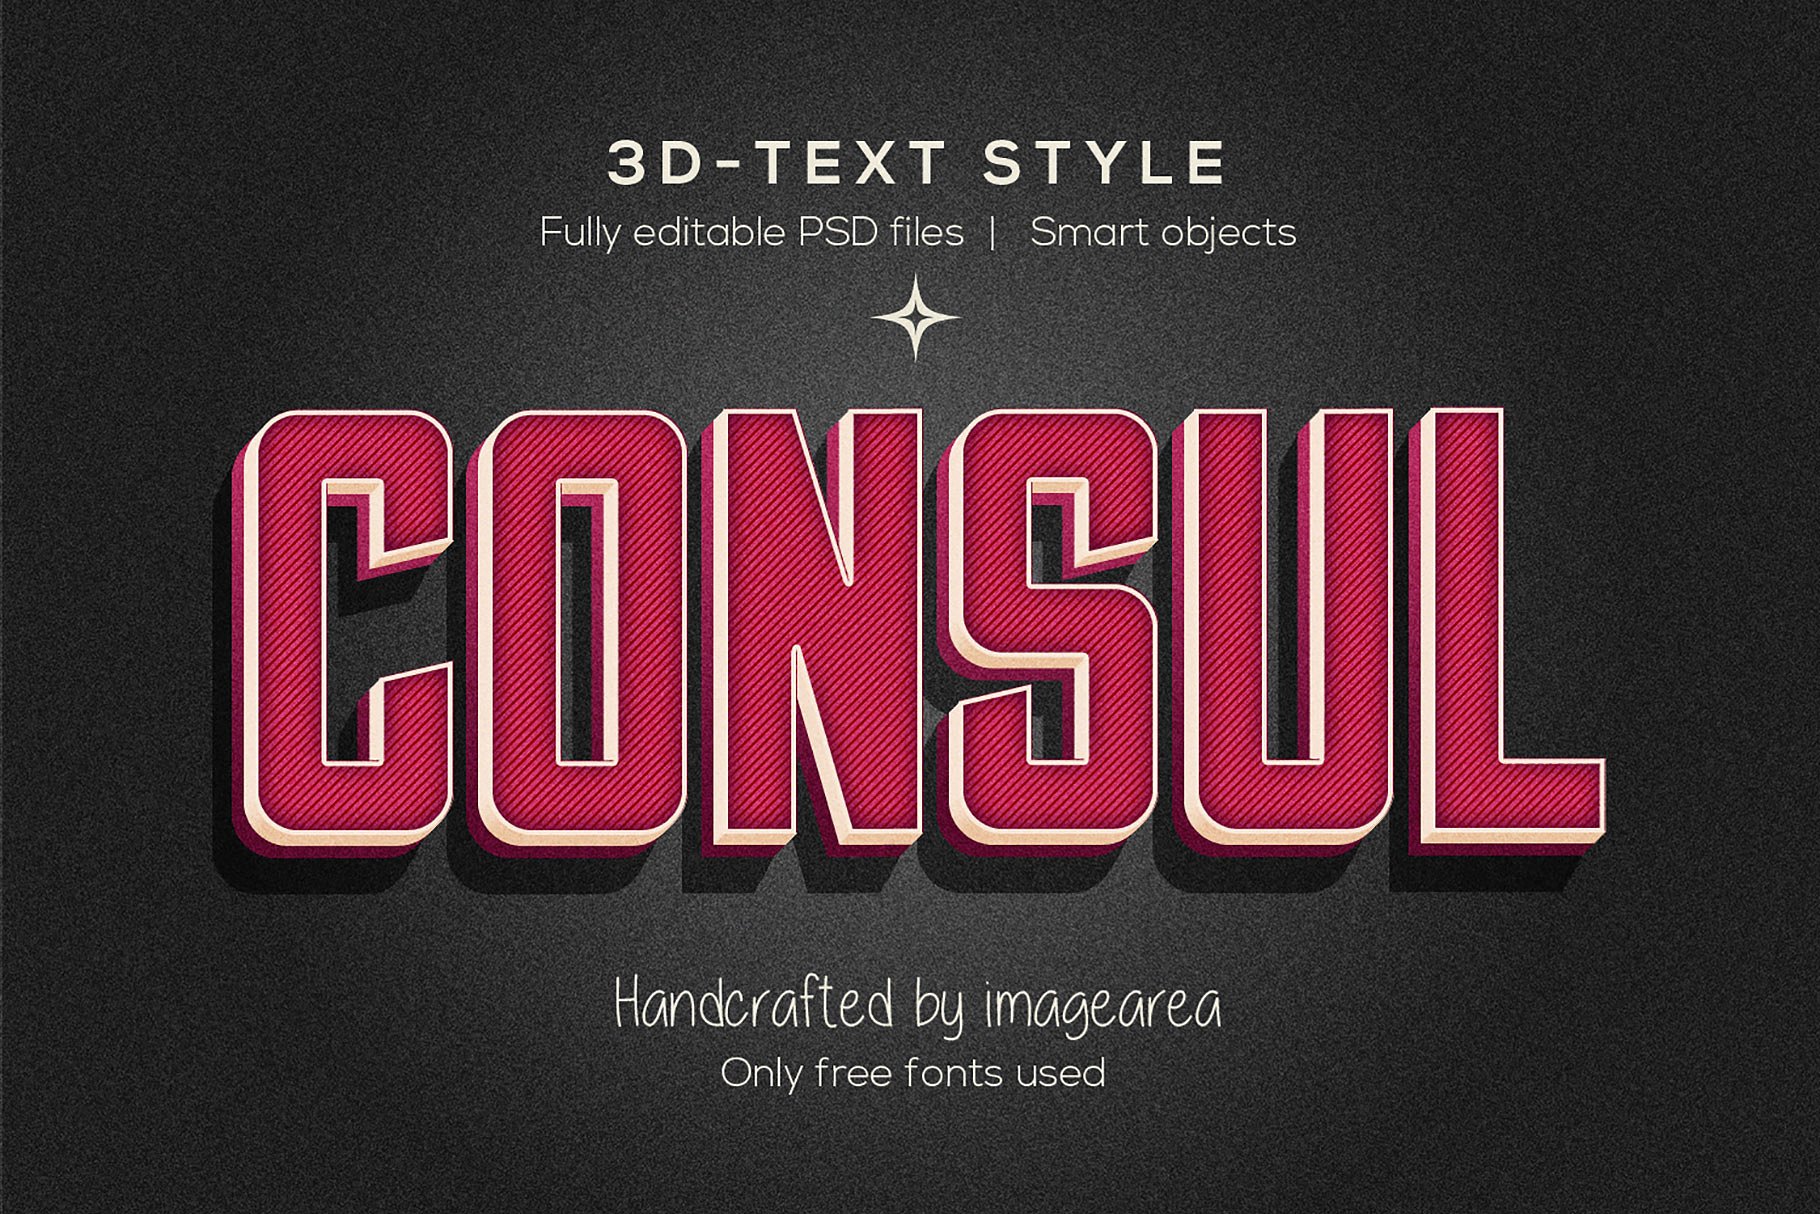 创意3D文本图层样式 Amazing 3D Text Styles插图(4)